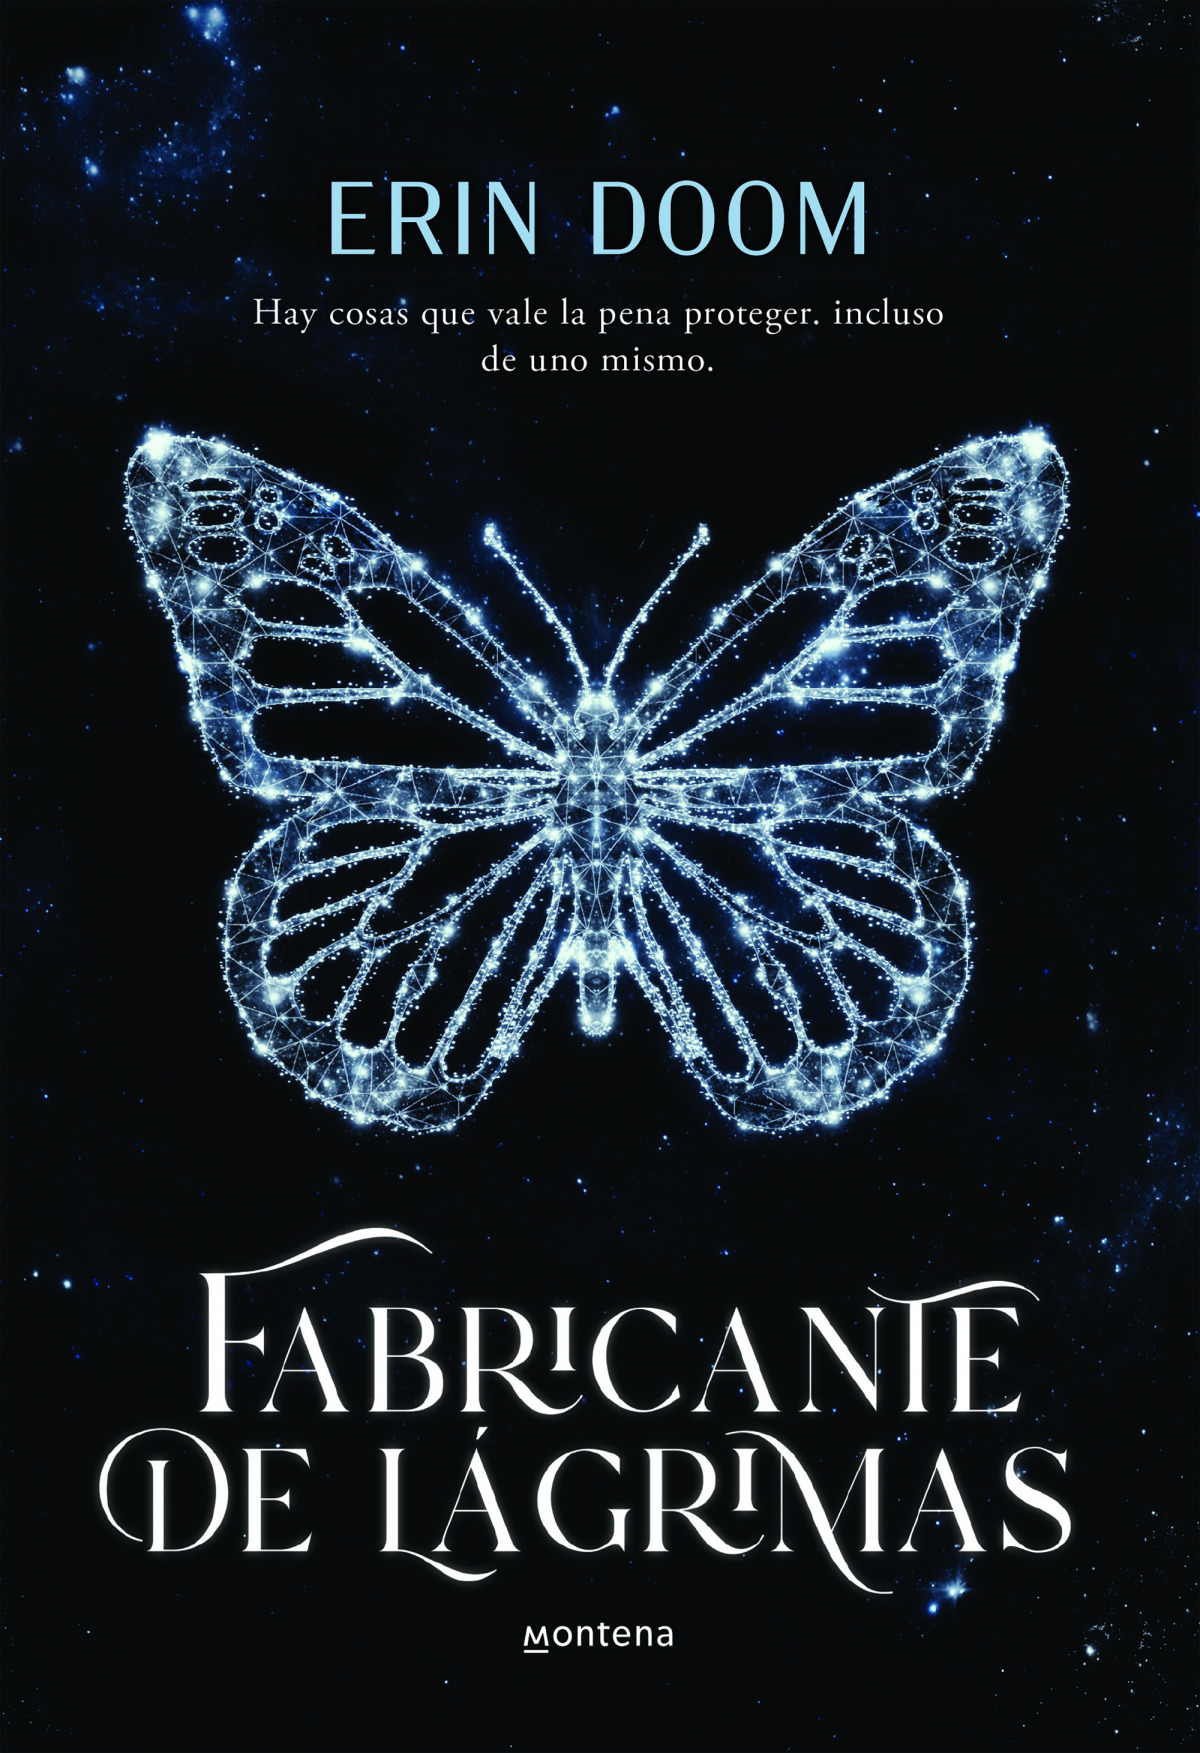 Papeleria Librería La Fuente - FABRICANTE DE LAGRIMAS, el libro más viral  de los últimos años. El 26 de enero llega a las librerías Fabricante de  lagrimas' el fenómeno literario que ha